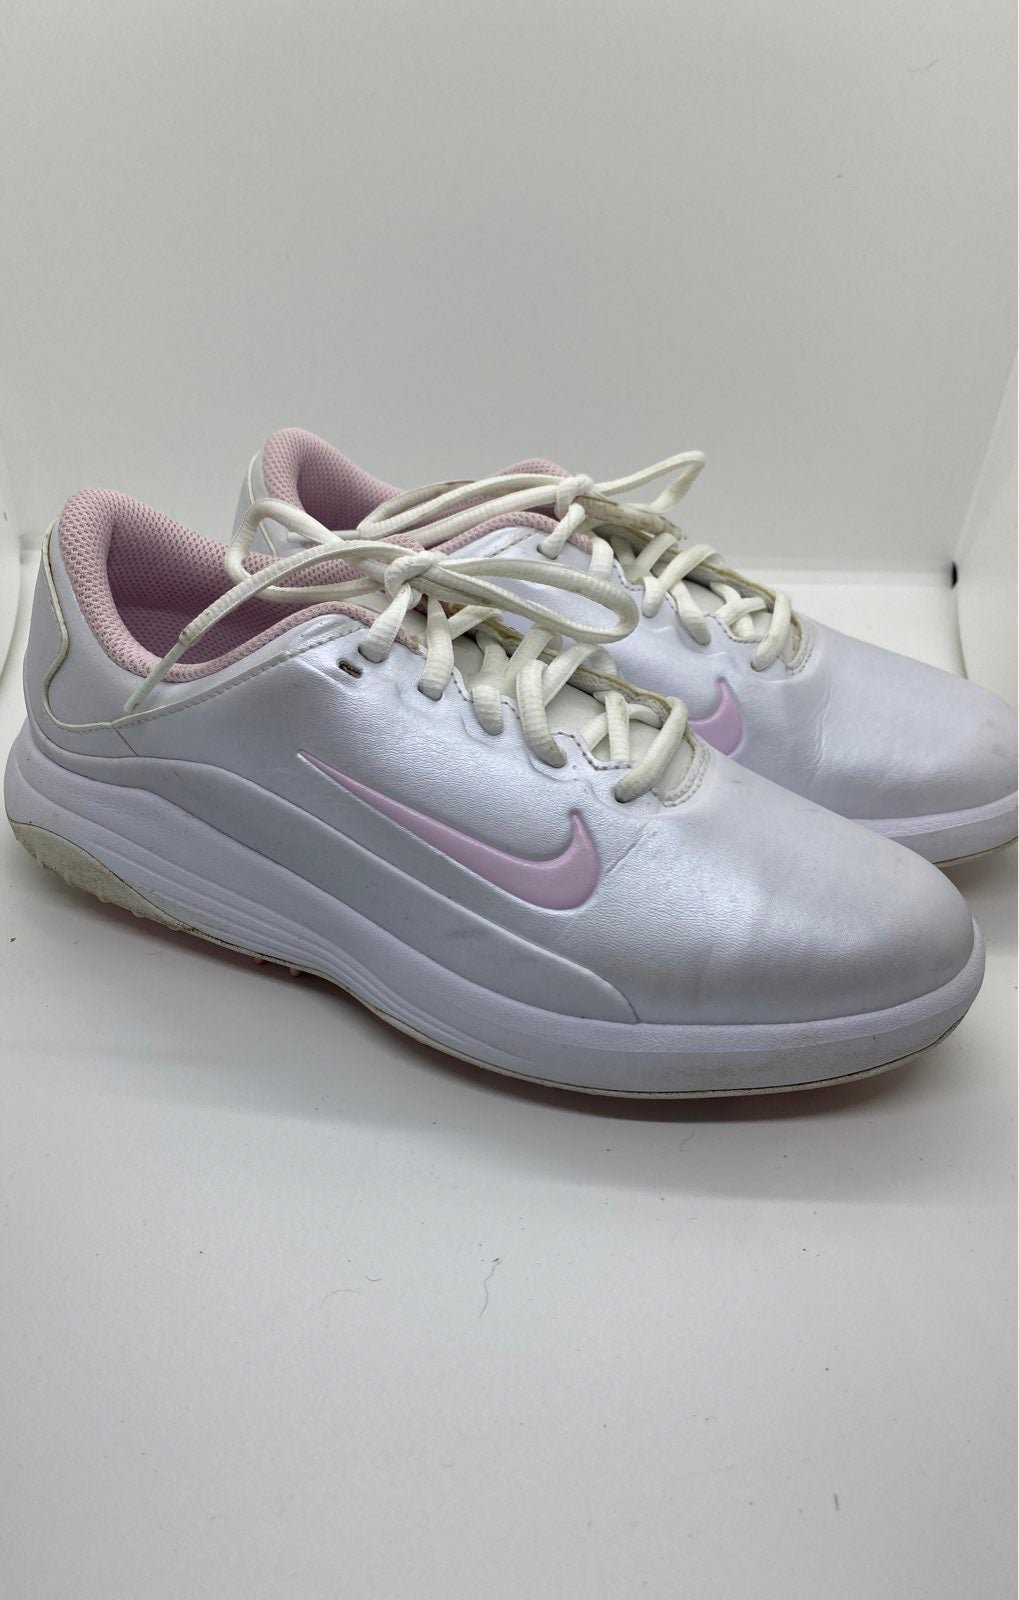 Nike golf shoes for women 1vsutk7Q6